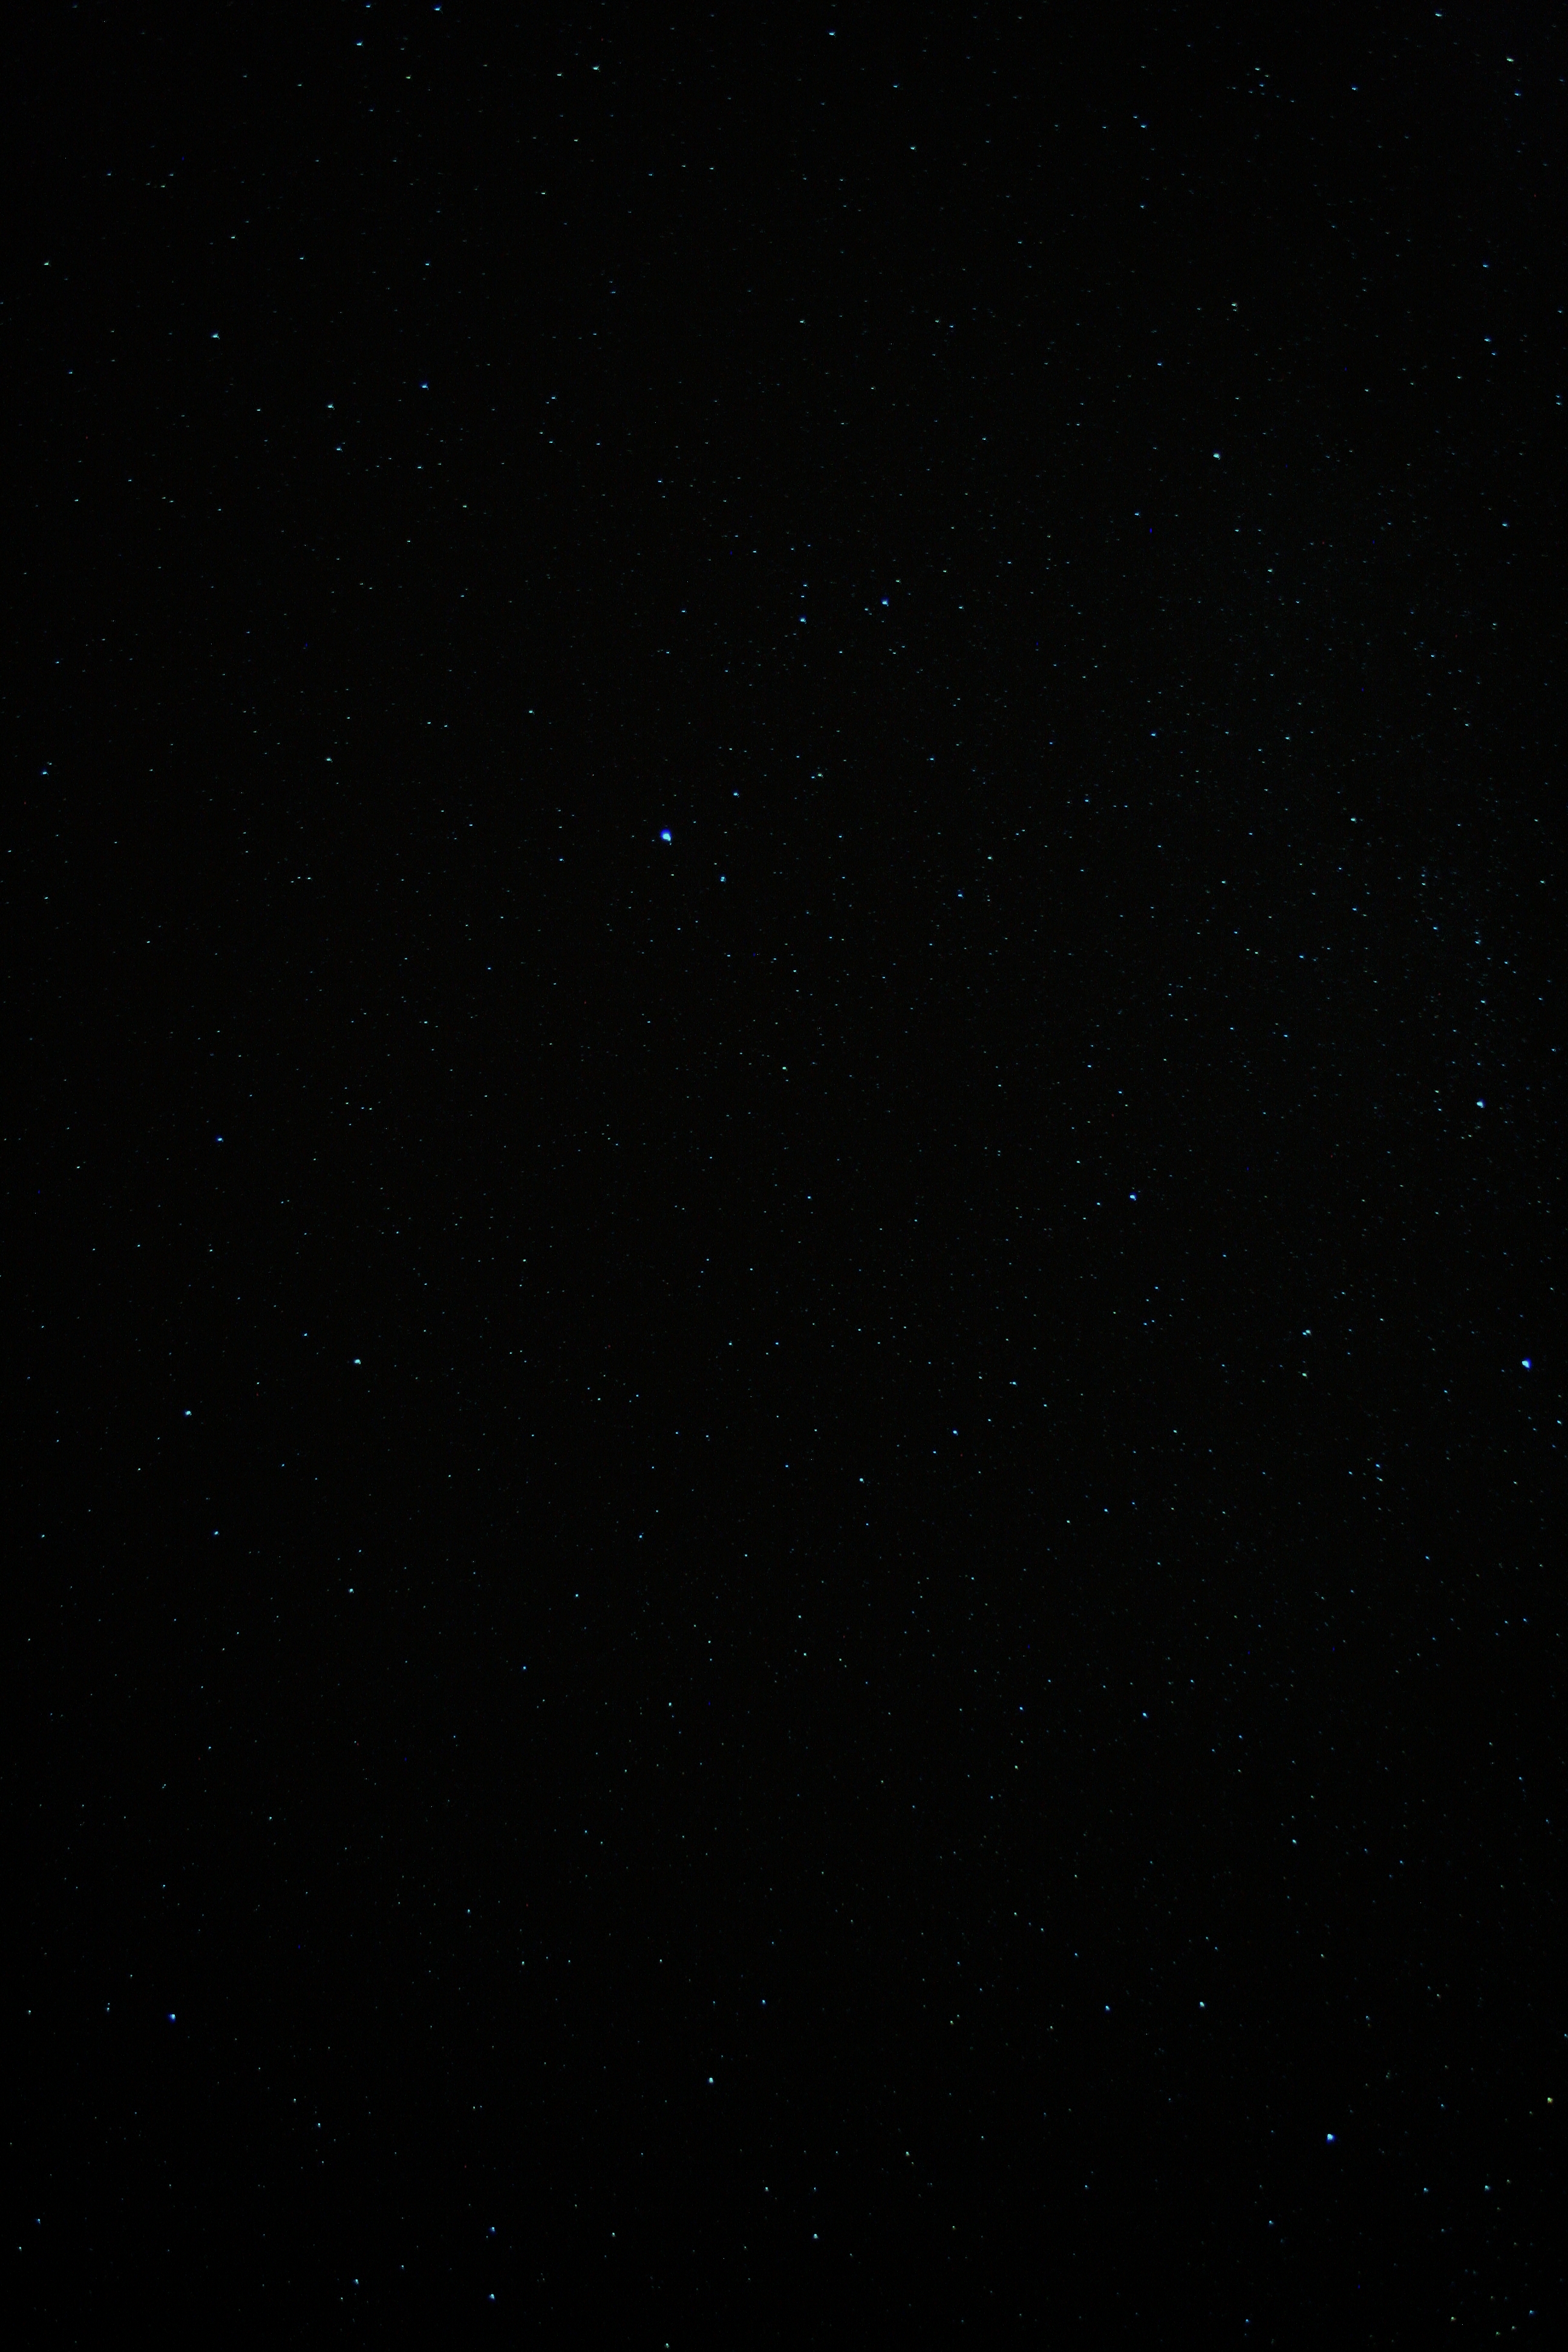 Night sky, stars